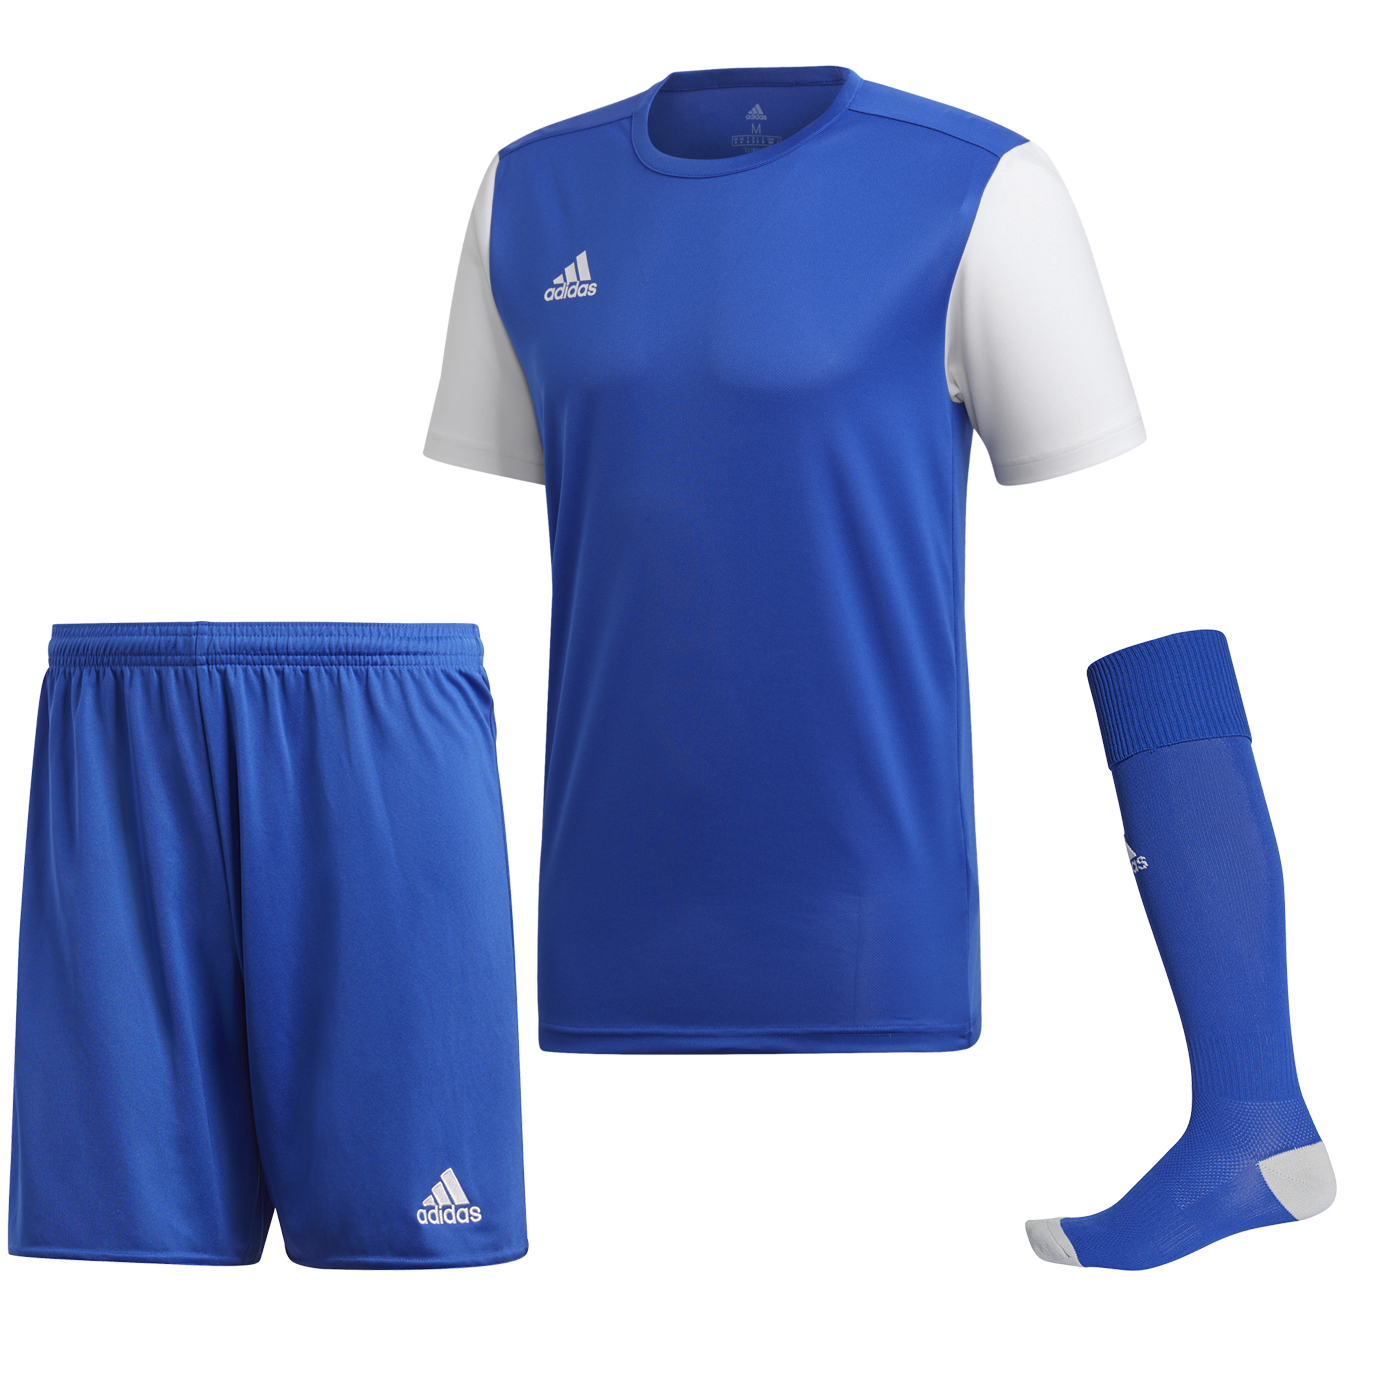 Adidas Estro 19 modrá/bílá UK Junior XL Dětské